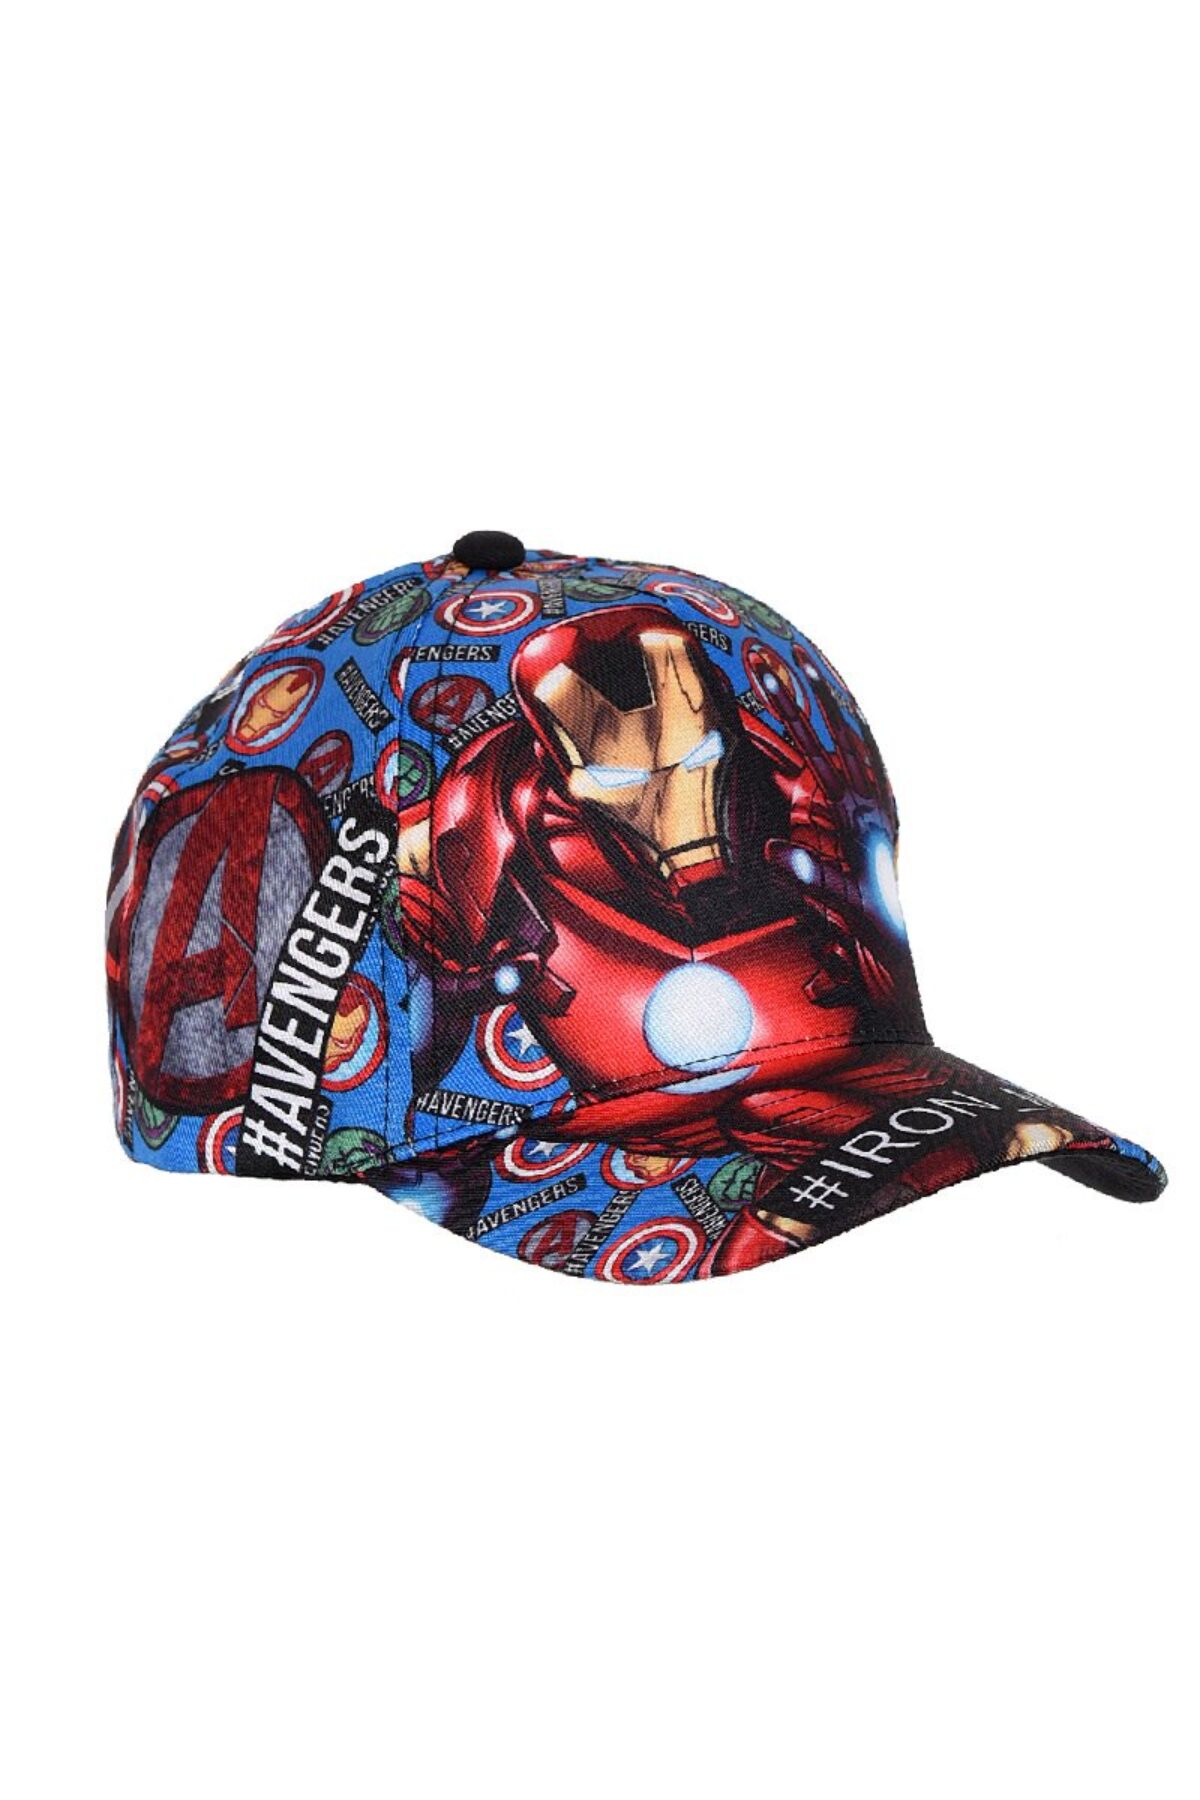 Cappello da baseball con schiena regolabile da 3 a 8 anni Marvel Avengers UE4107 52-54 cm 